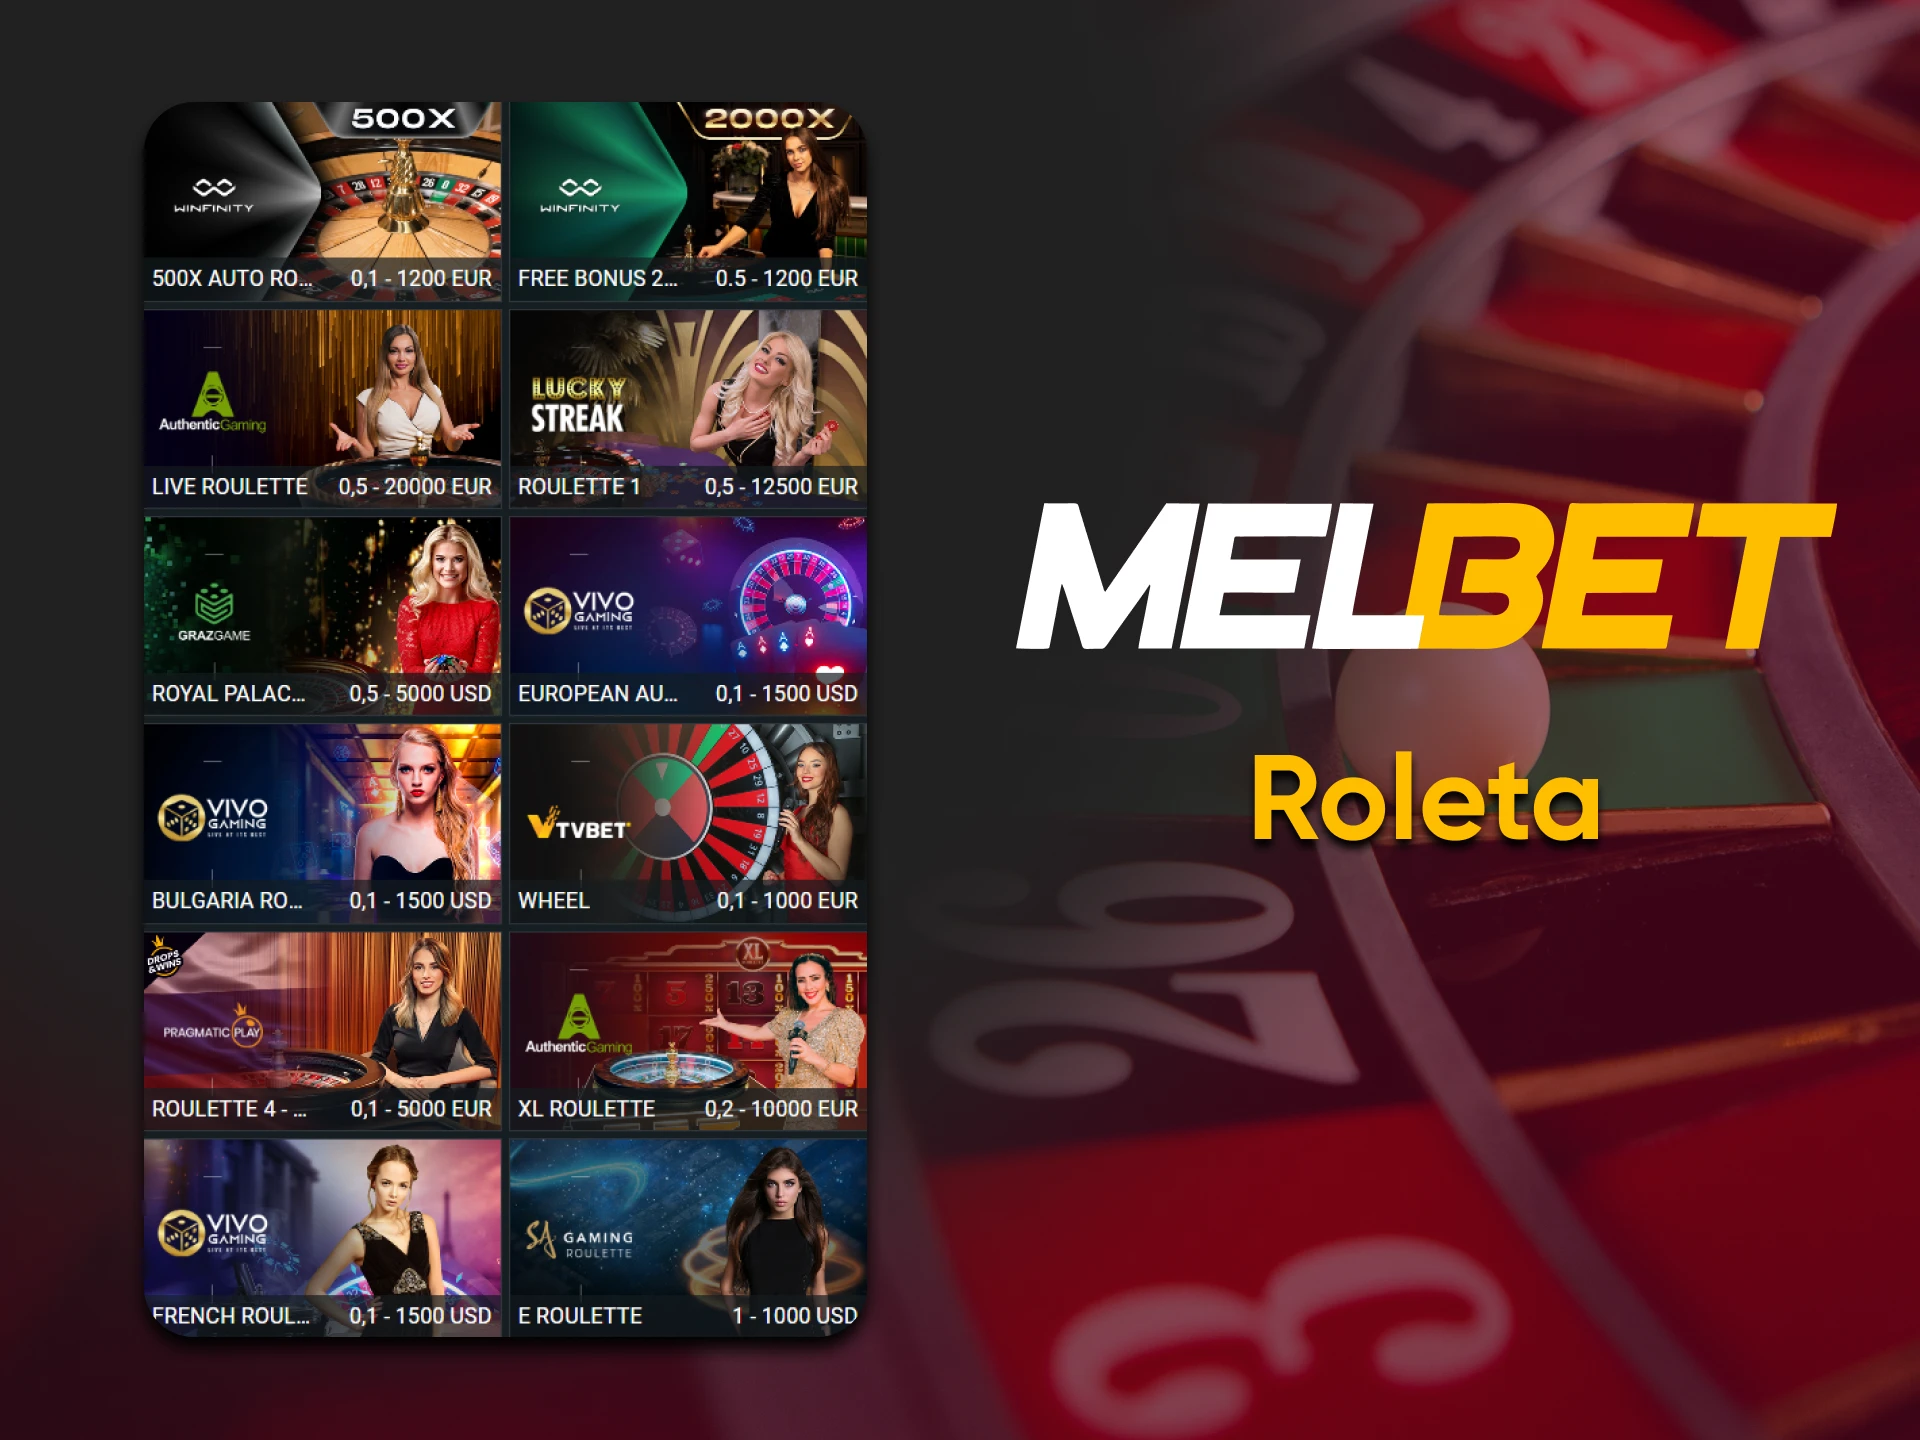 Jogue Roleta com Melbet.